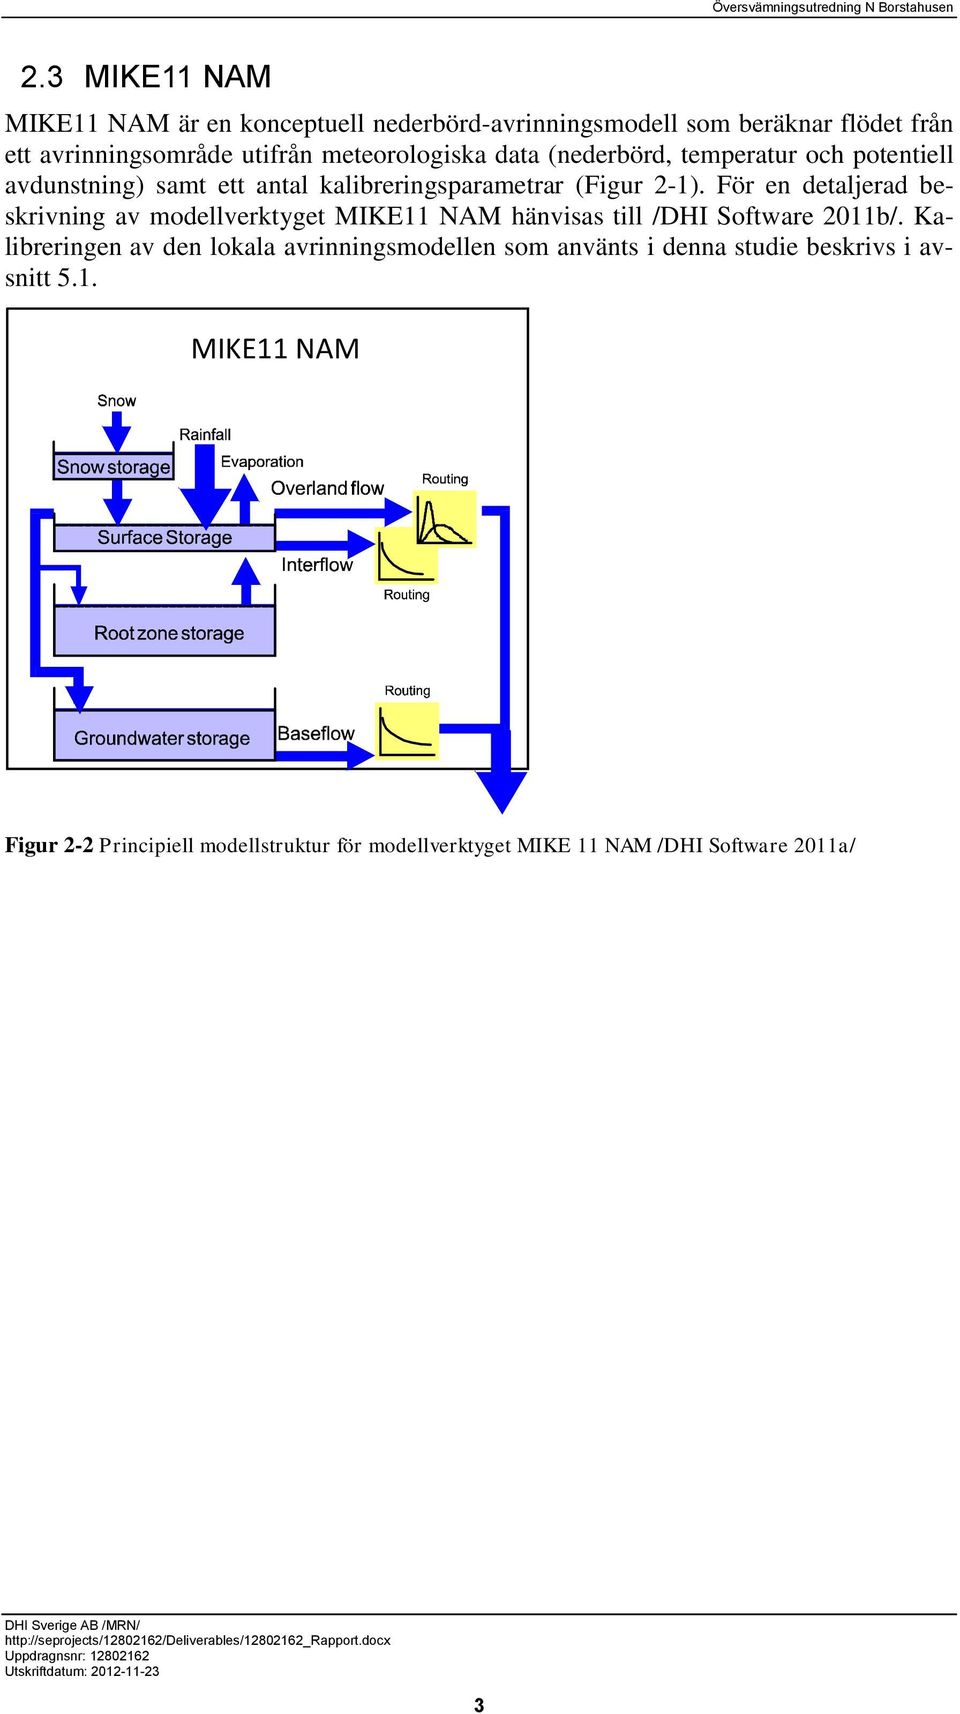 För en detaljerad beskrivning av modellverktyget MIKE11 NAM hänvisas till /DHI Software 2011b/.